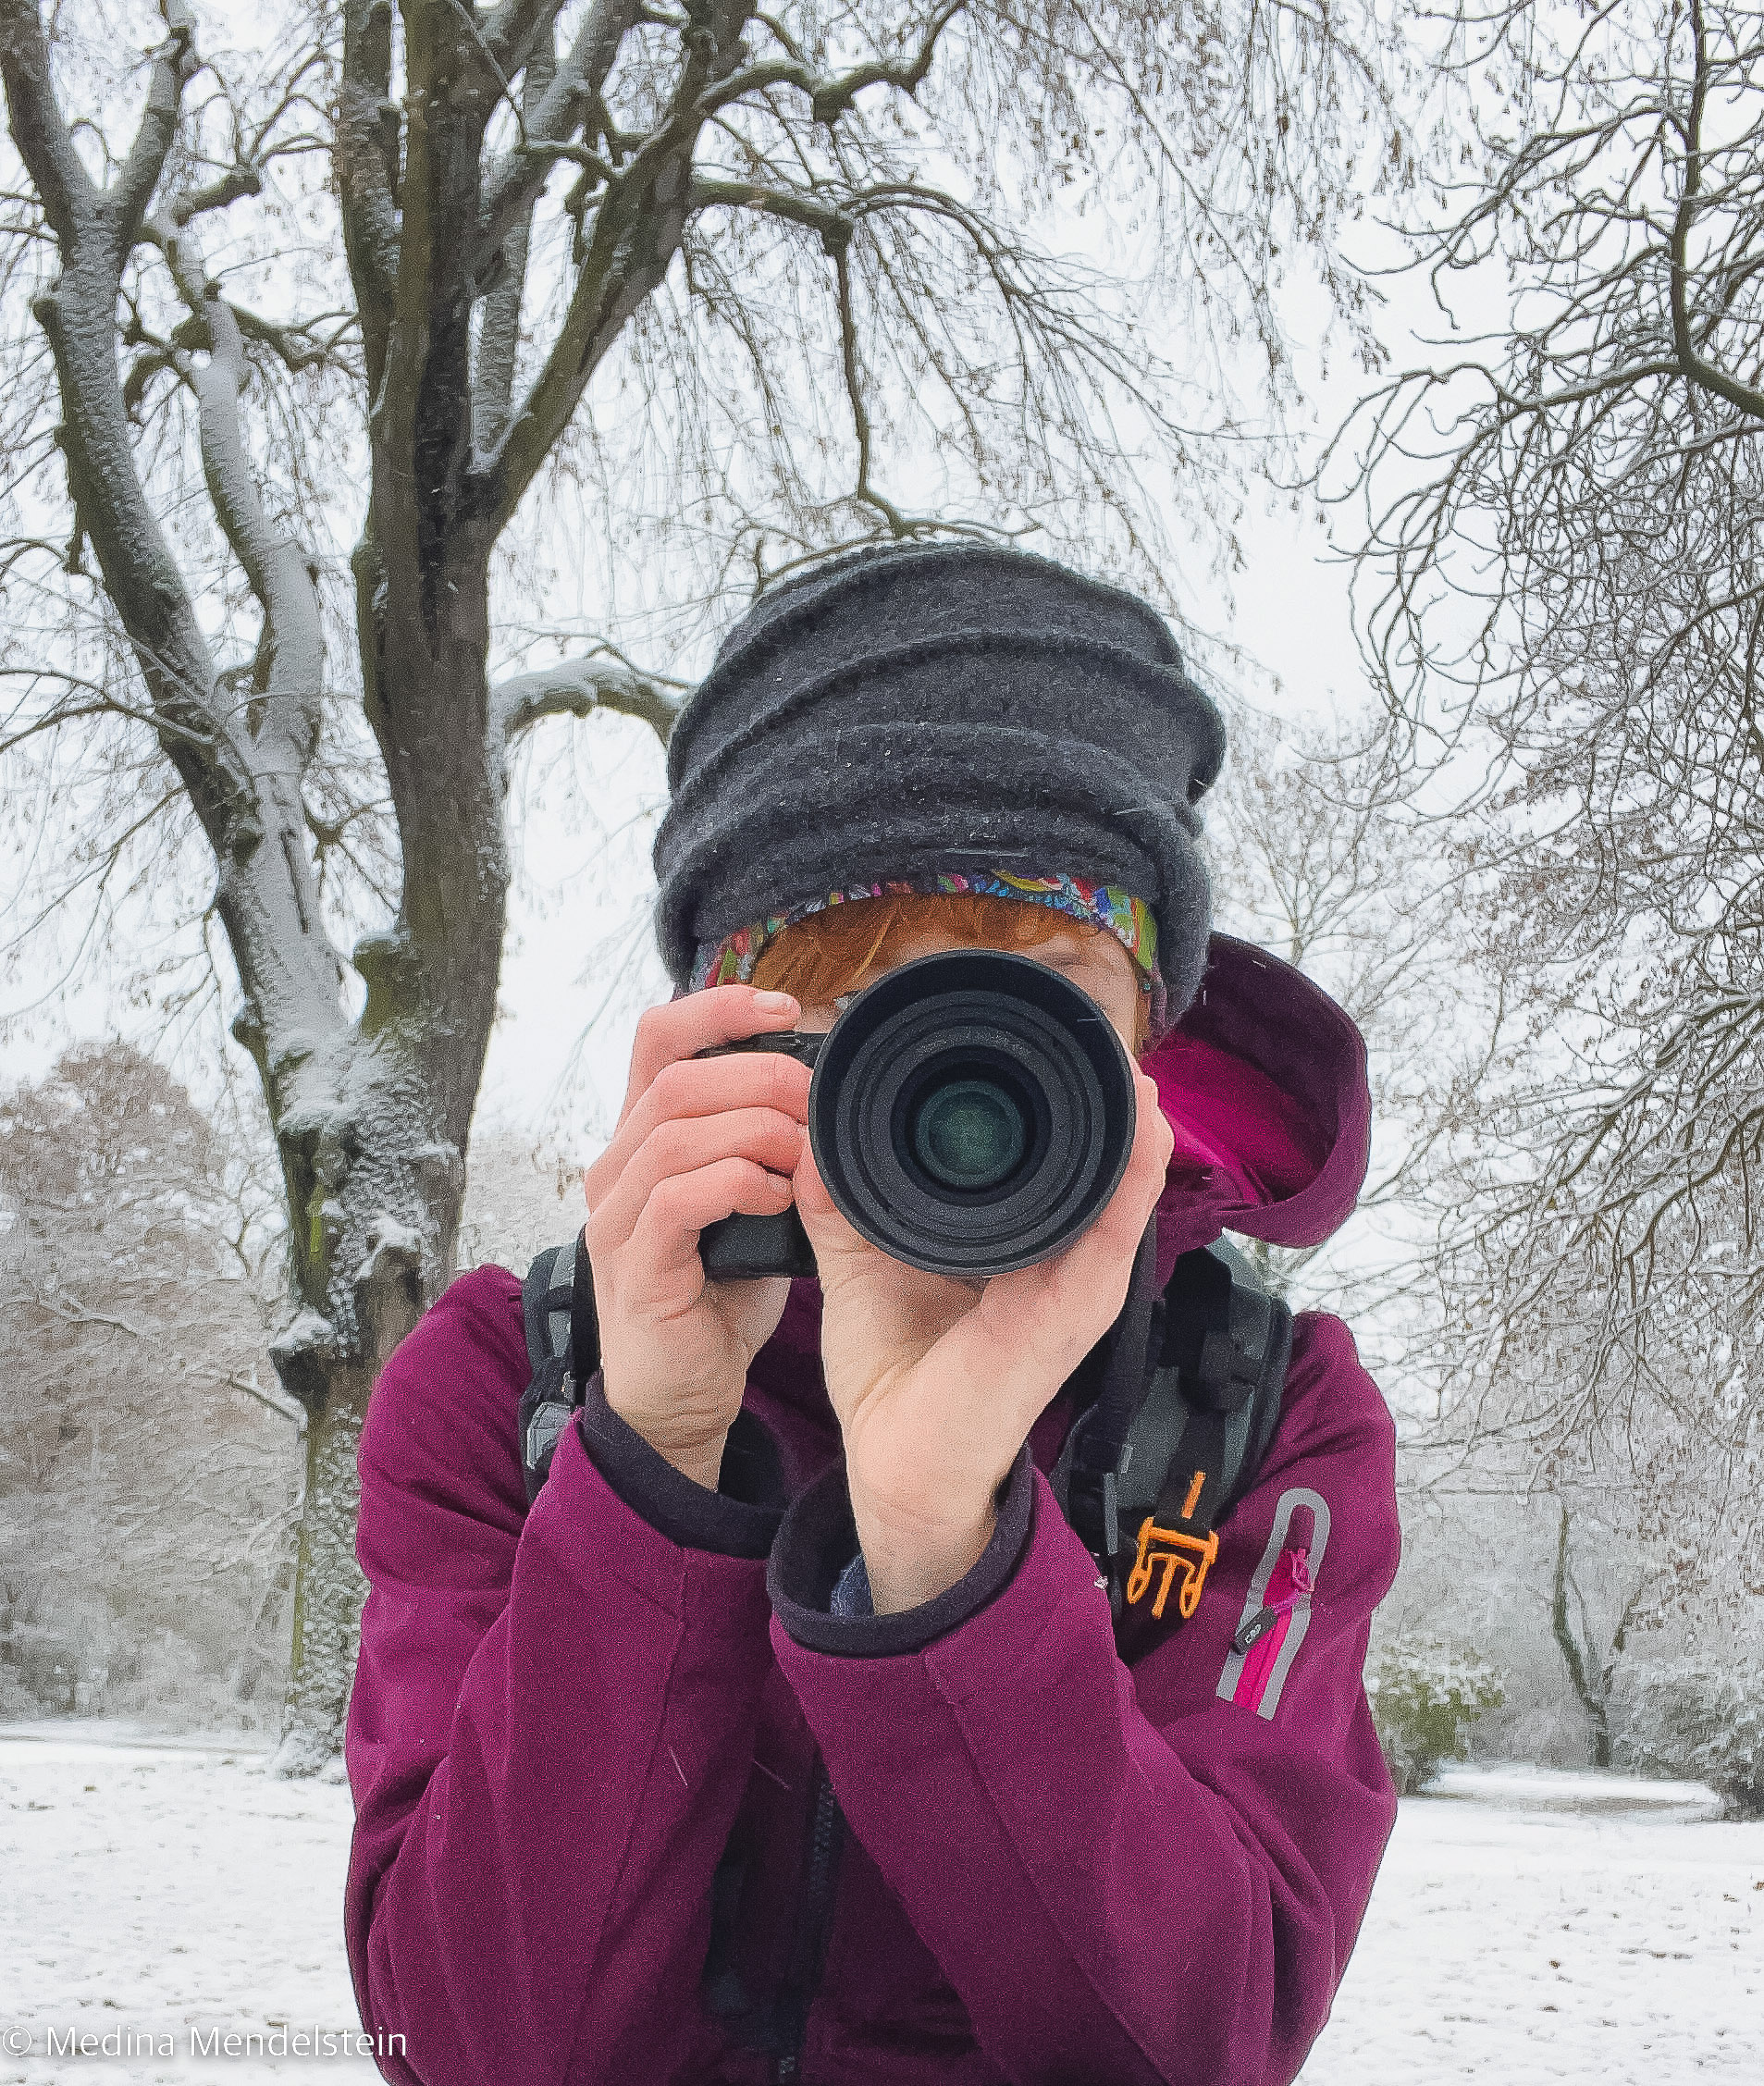 Fotografie – Medina Mendelstein, Content Creator, mit einer Sony Alpha Kamera in der Hand. Die Kamera ist auf den Betrachter des Fotos gerichtet. Im Hintergrund liegt Schnee.